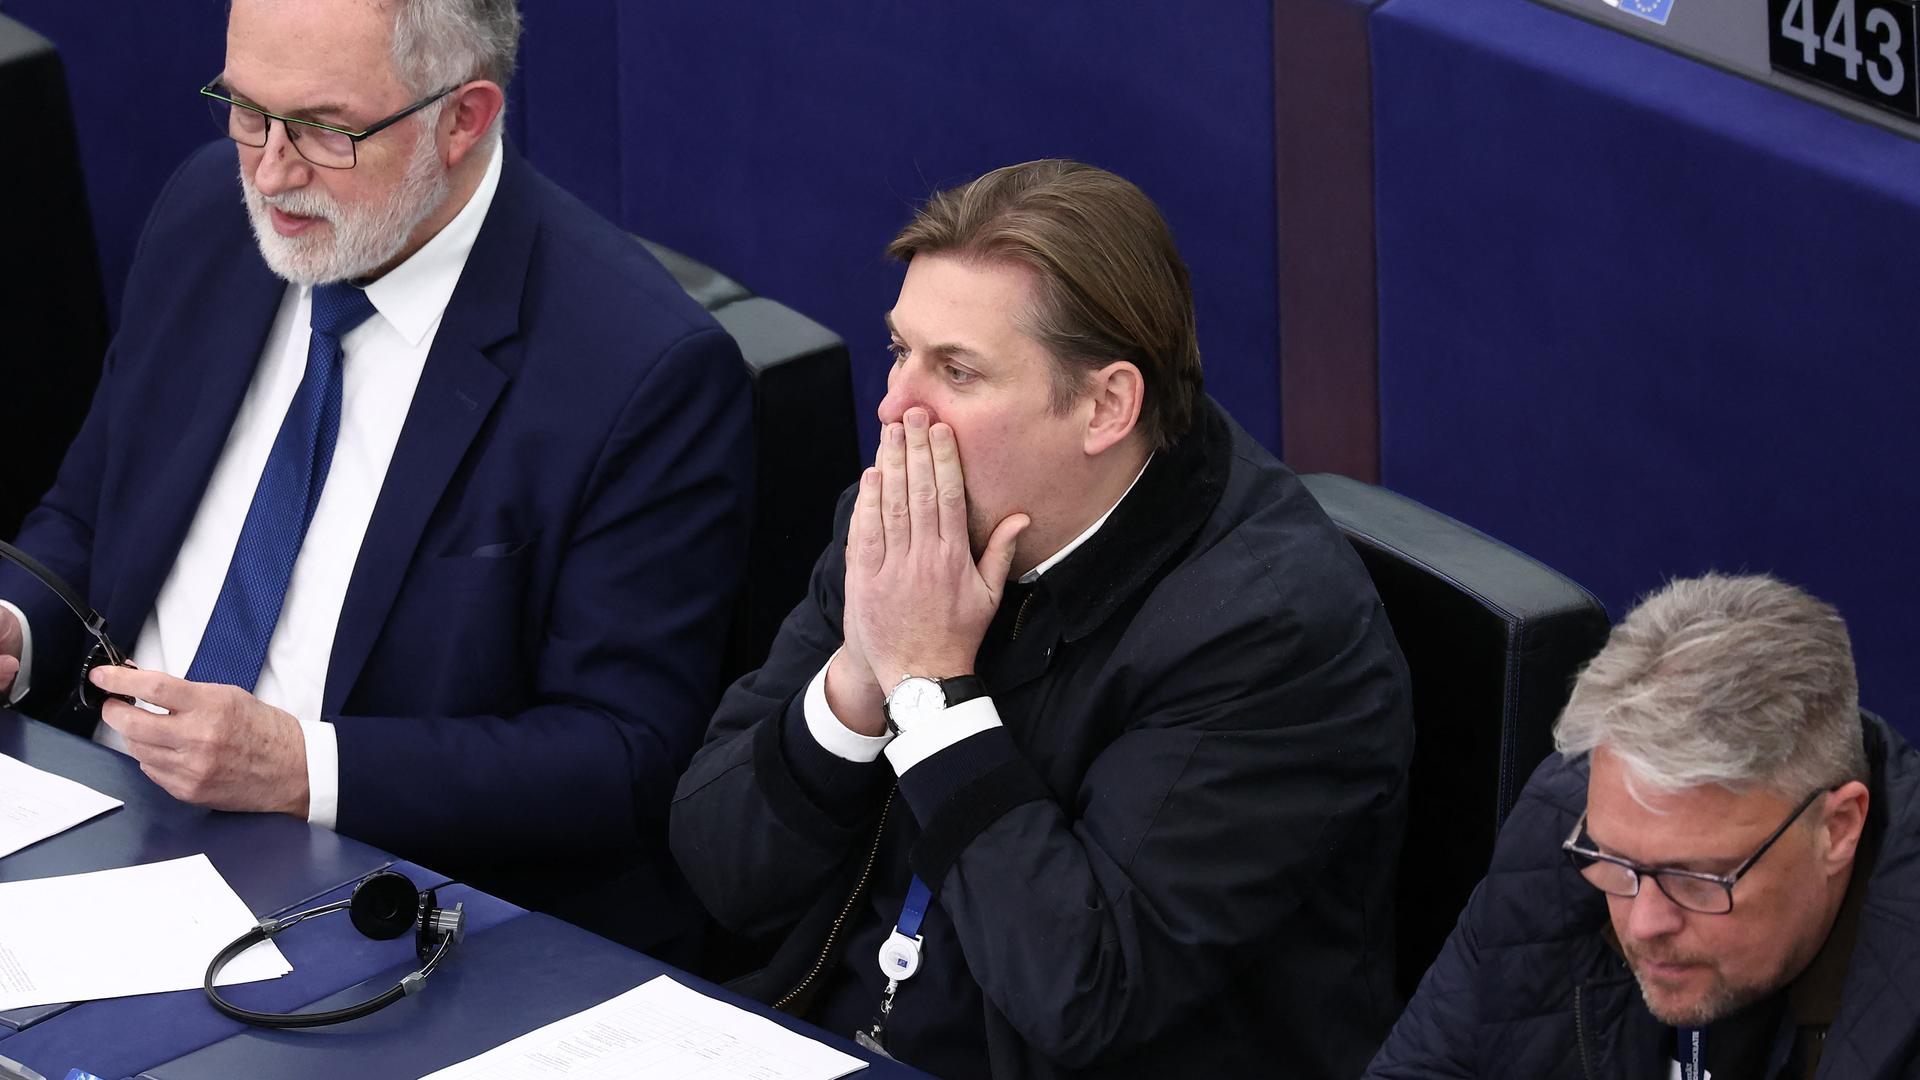 Der AfD-Politiker Maximilian Krah sitzt zwischen zwei Abgeordneten im EU-Parlament in Straßburg.